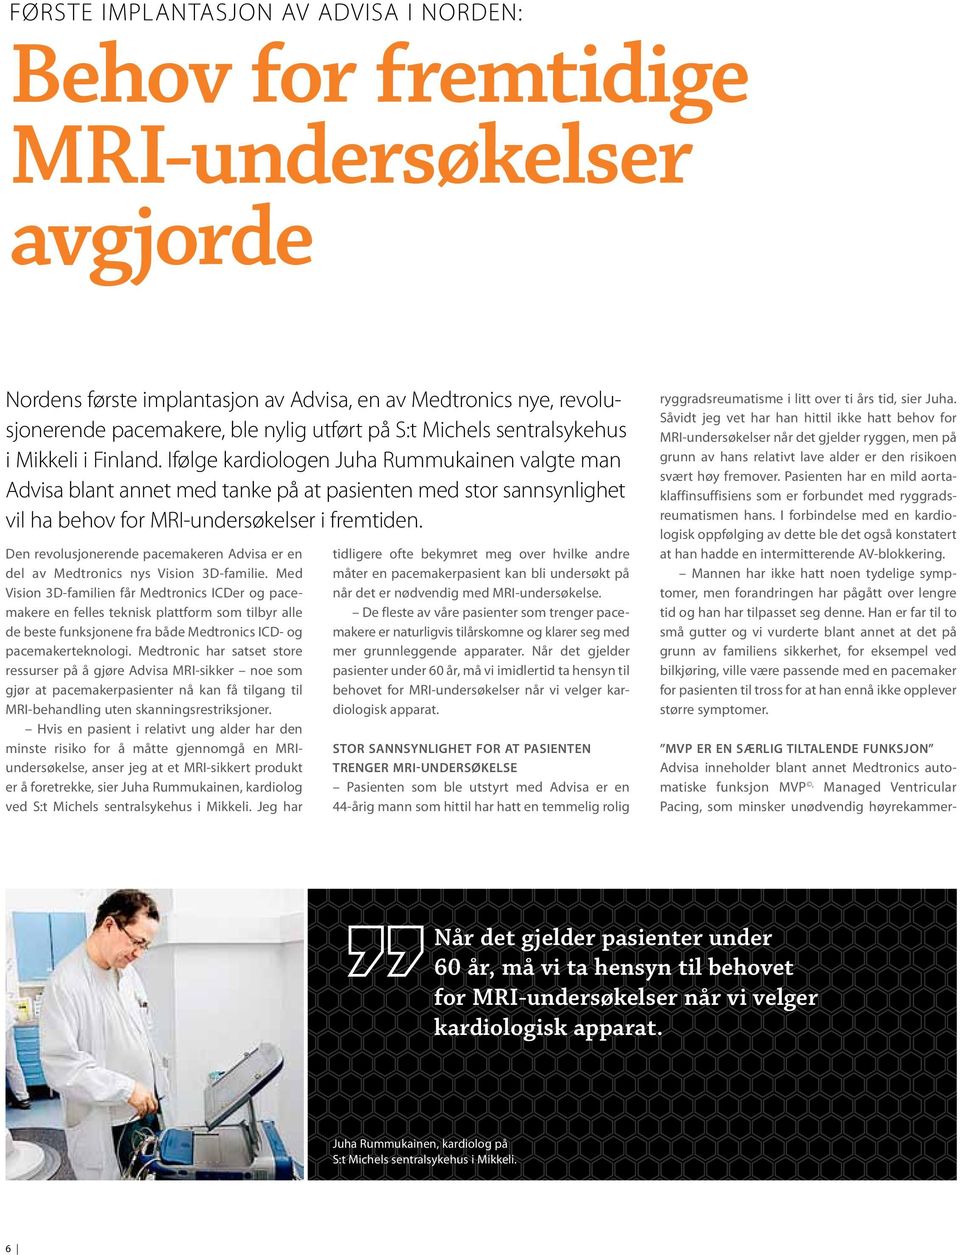 Ifølge kardiologen Juha Rummukainen valgte man Advisa blant annet med tanke på at pasienten med stor sannsynlighet vil ha behov for MRI-undersøkelser i fremtiden.